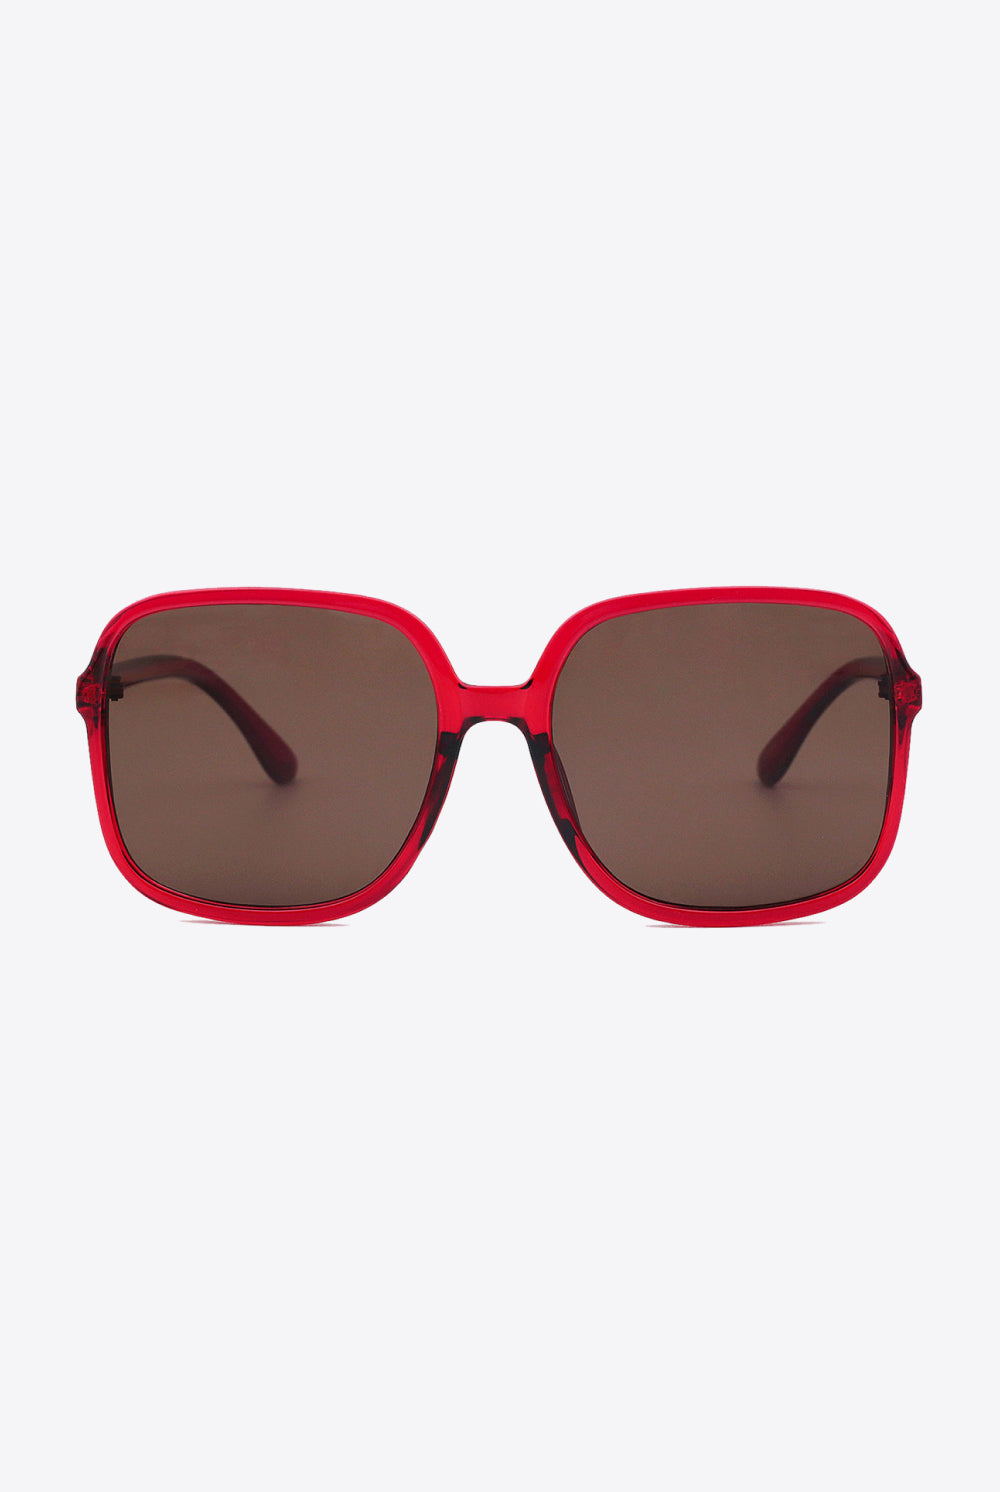 White Smoke Polycarbonate Square Sunglasses Sunglasses